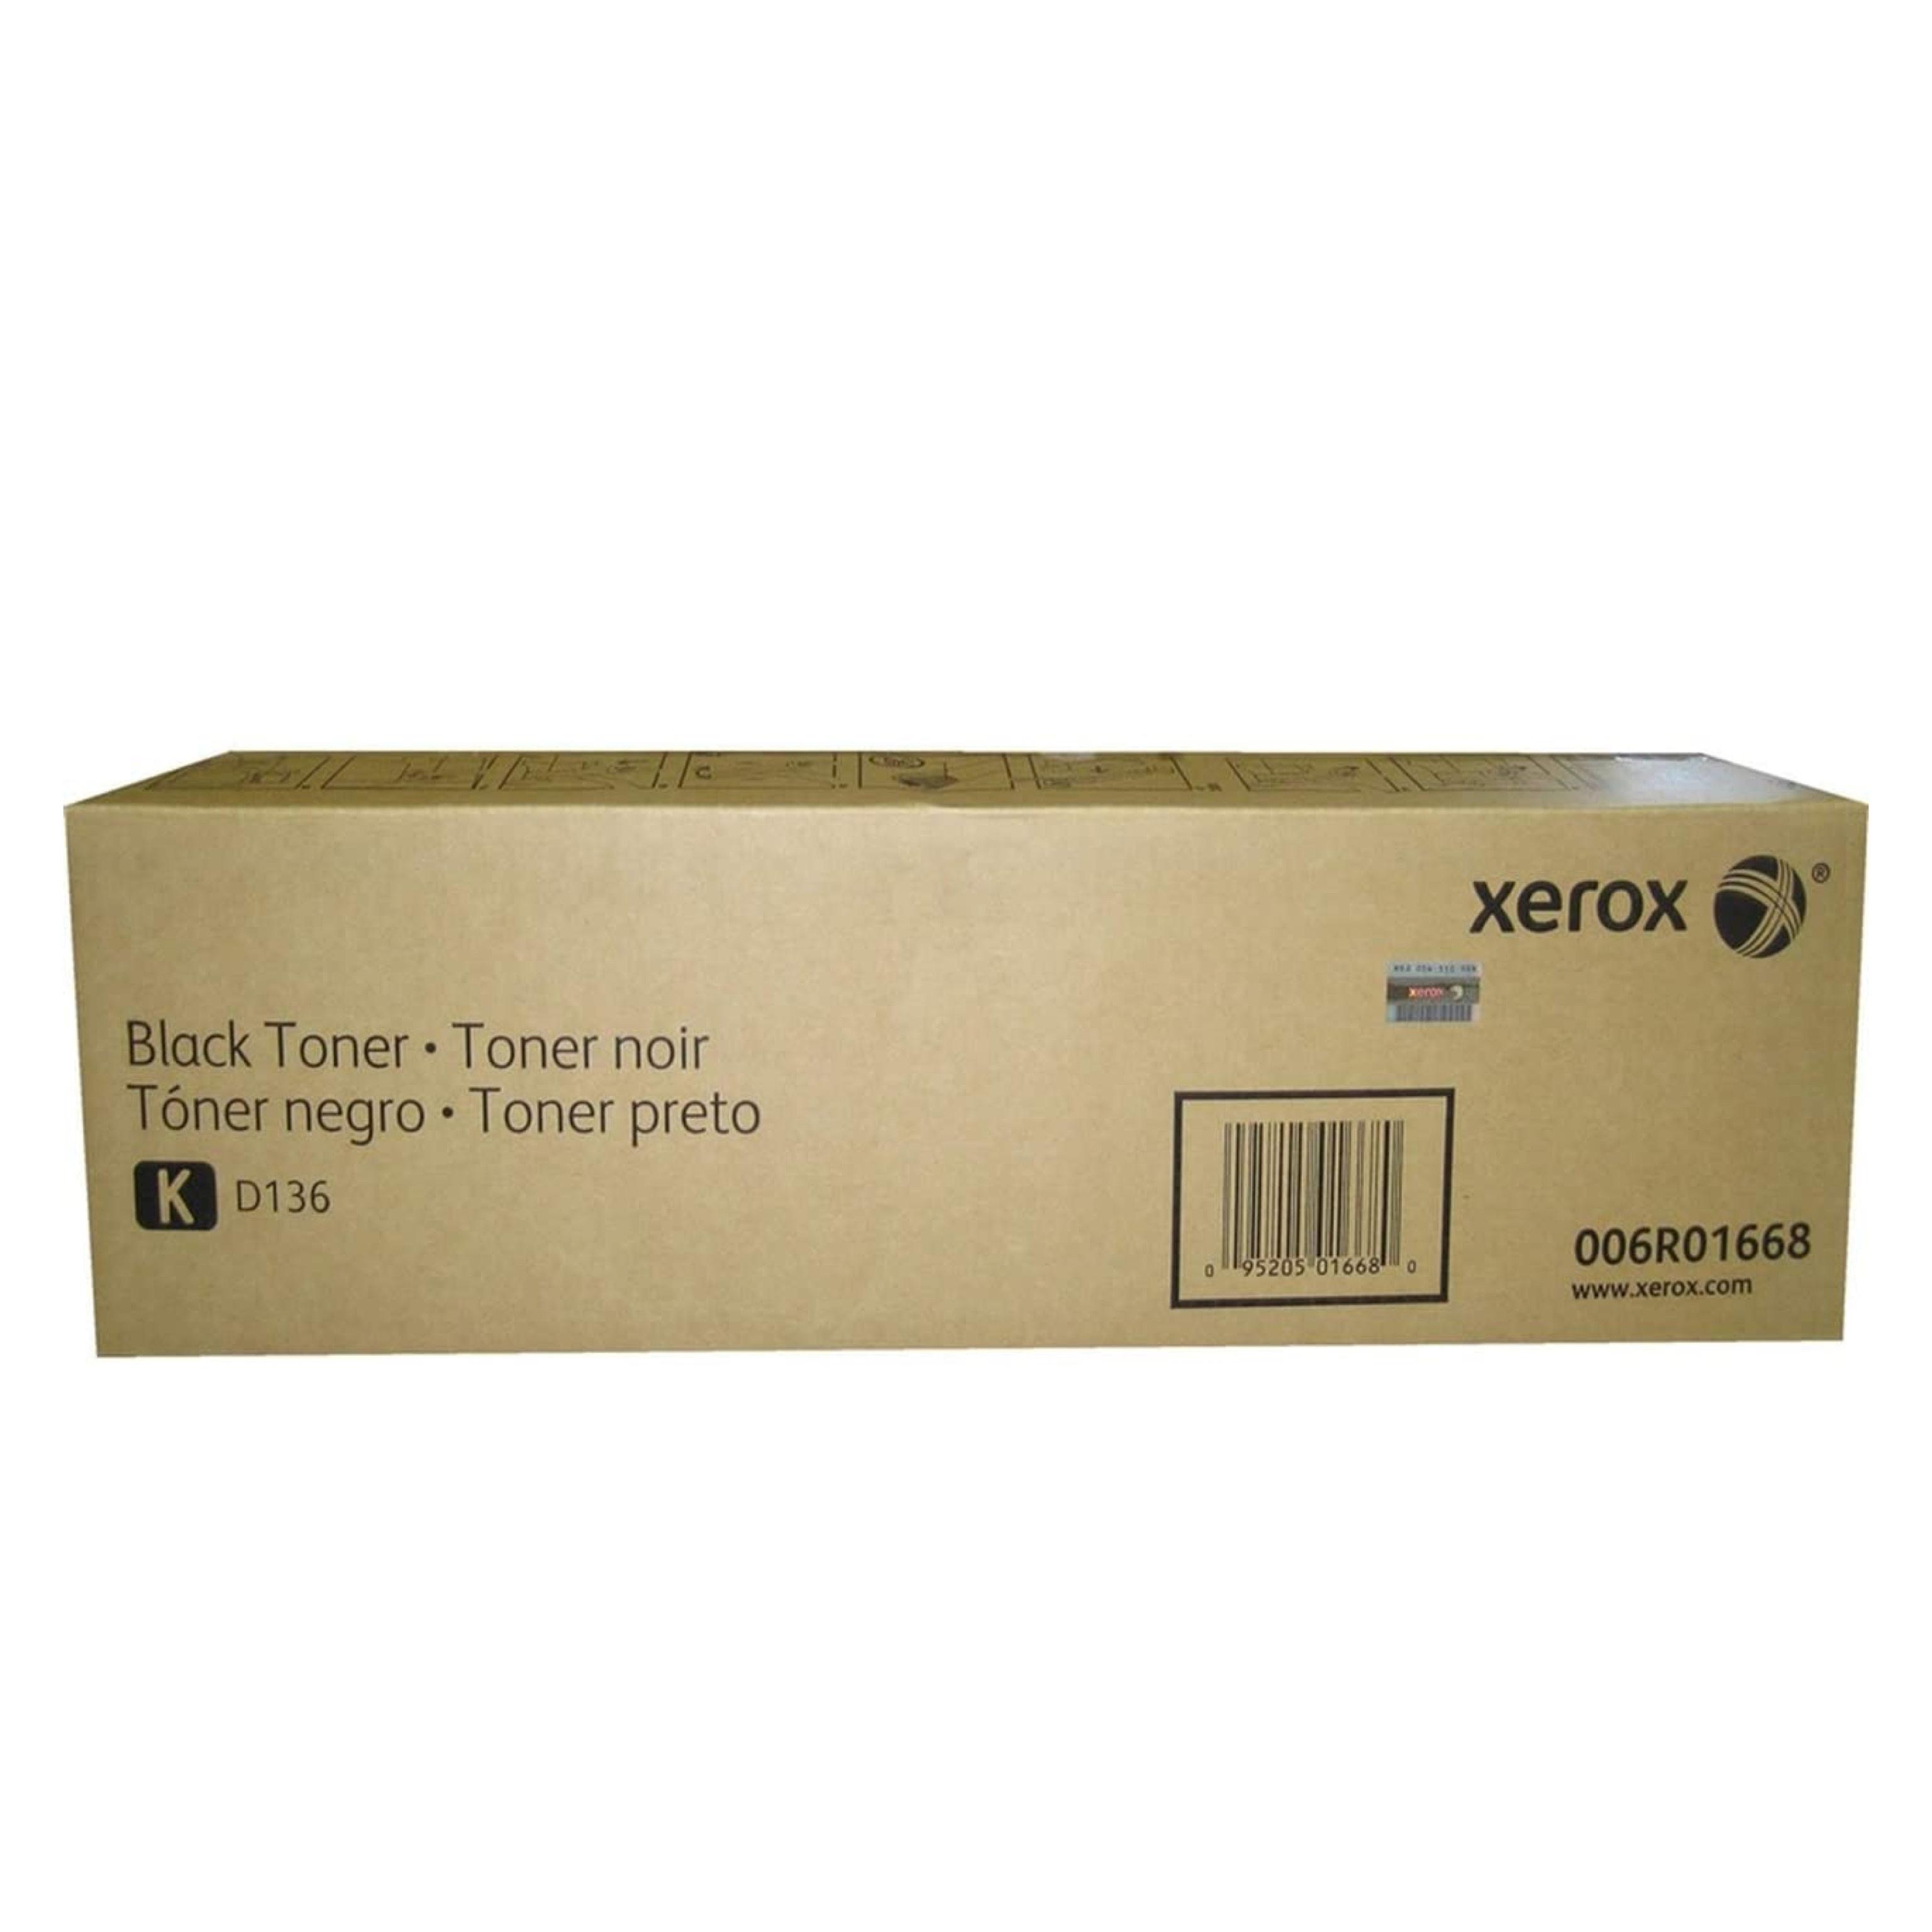 006R01668 - Toner Nero - Xerox® D136